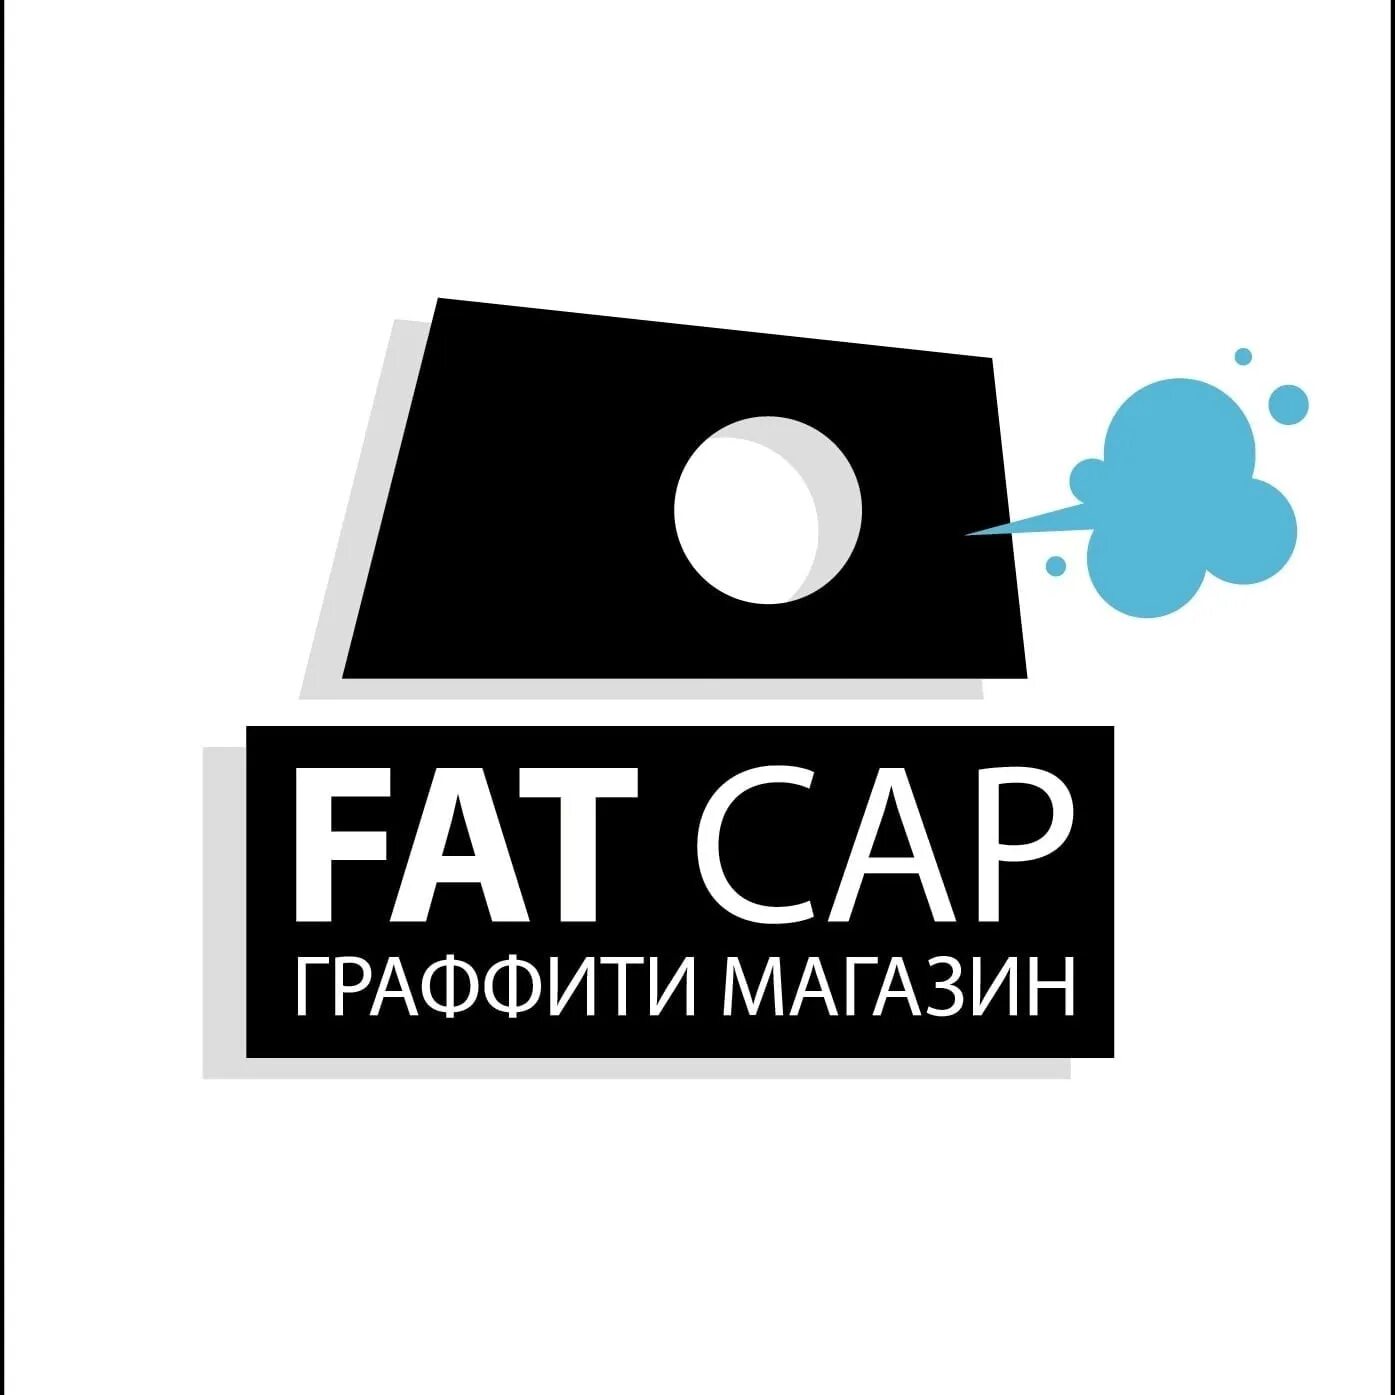 Fat cap Красноярск. Fat cap граффити. Фэт кэп граффити магазин. Fat cap Красноярск маркеры.